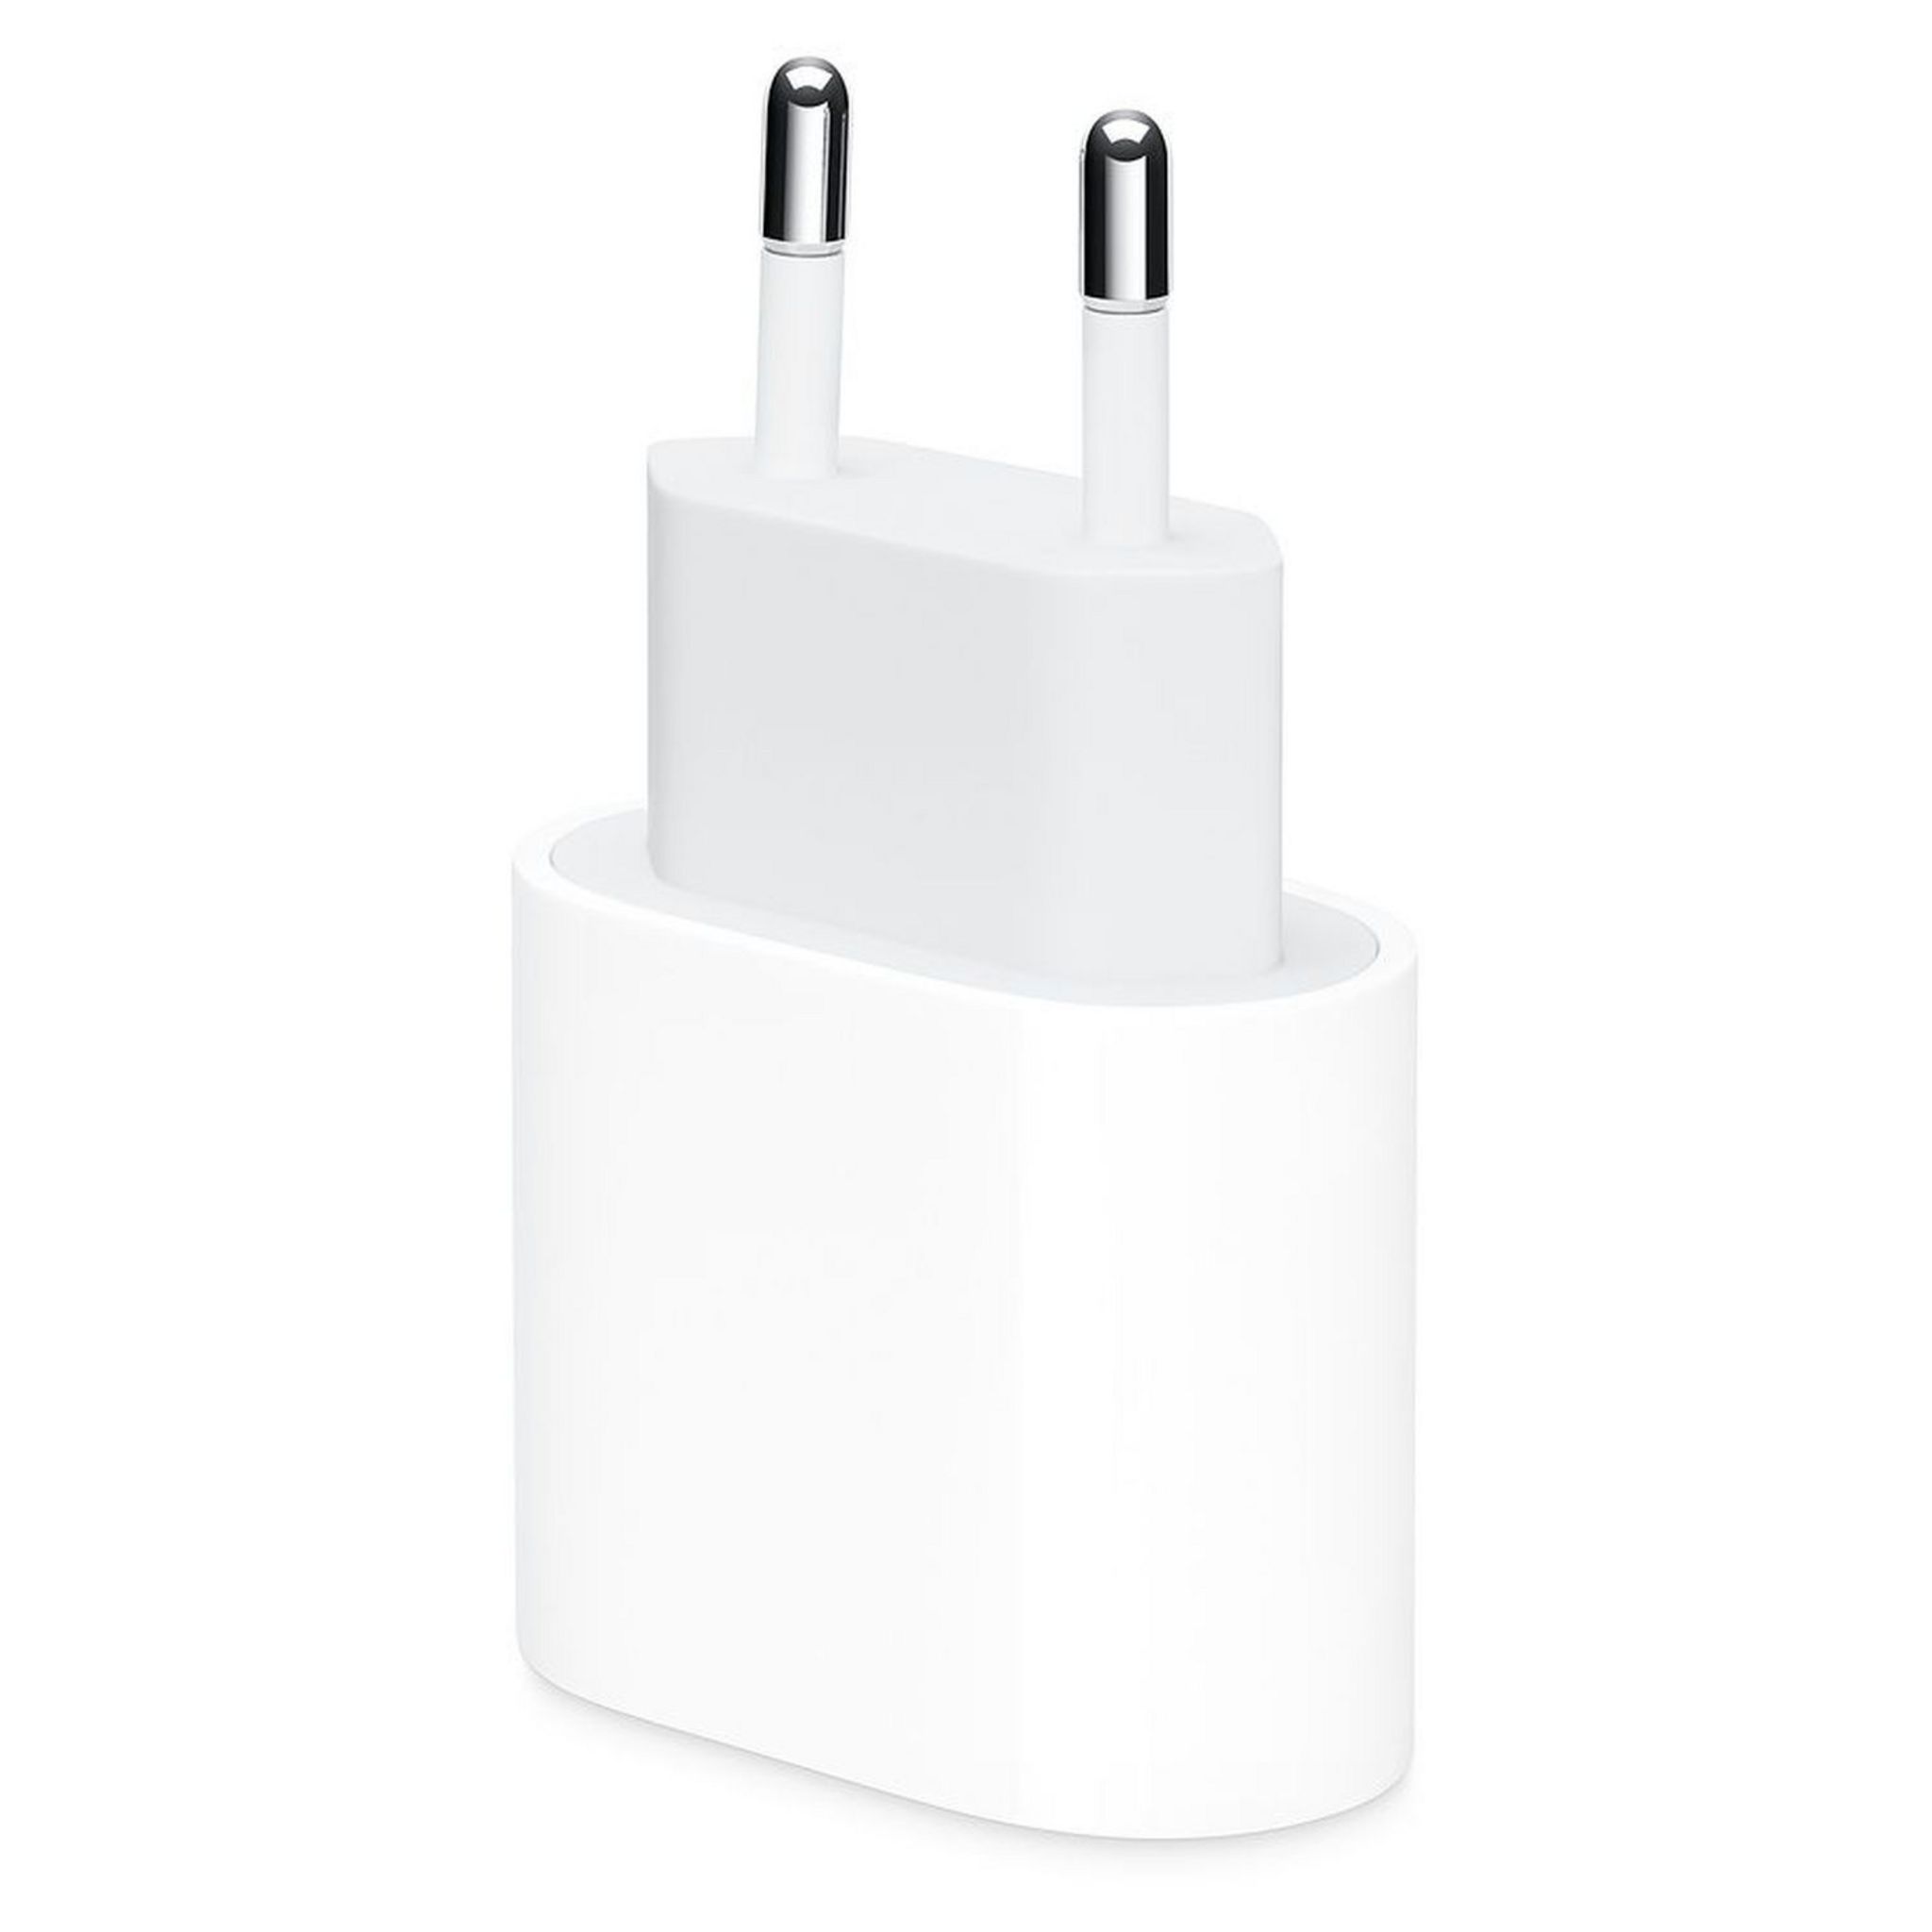 Chargeur pour téléphone mobile Phonillico Chargeur Secteur Blanc pour Apple iPhone  SE - Chargeur Port USB Chargeur Secteur Prise Murale®